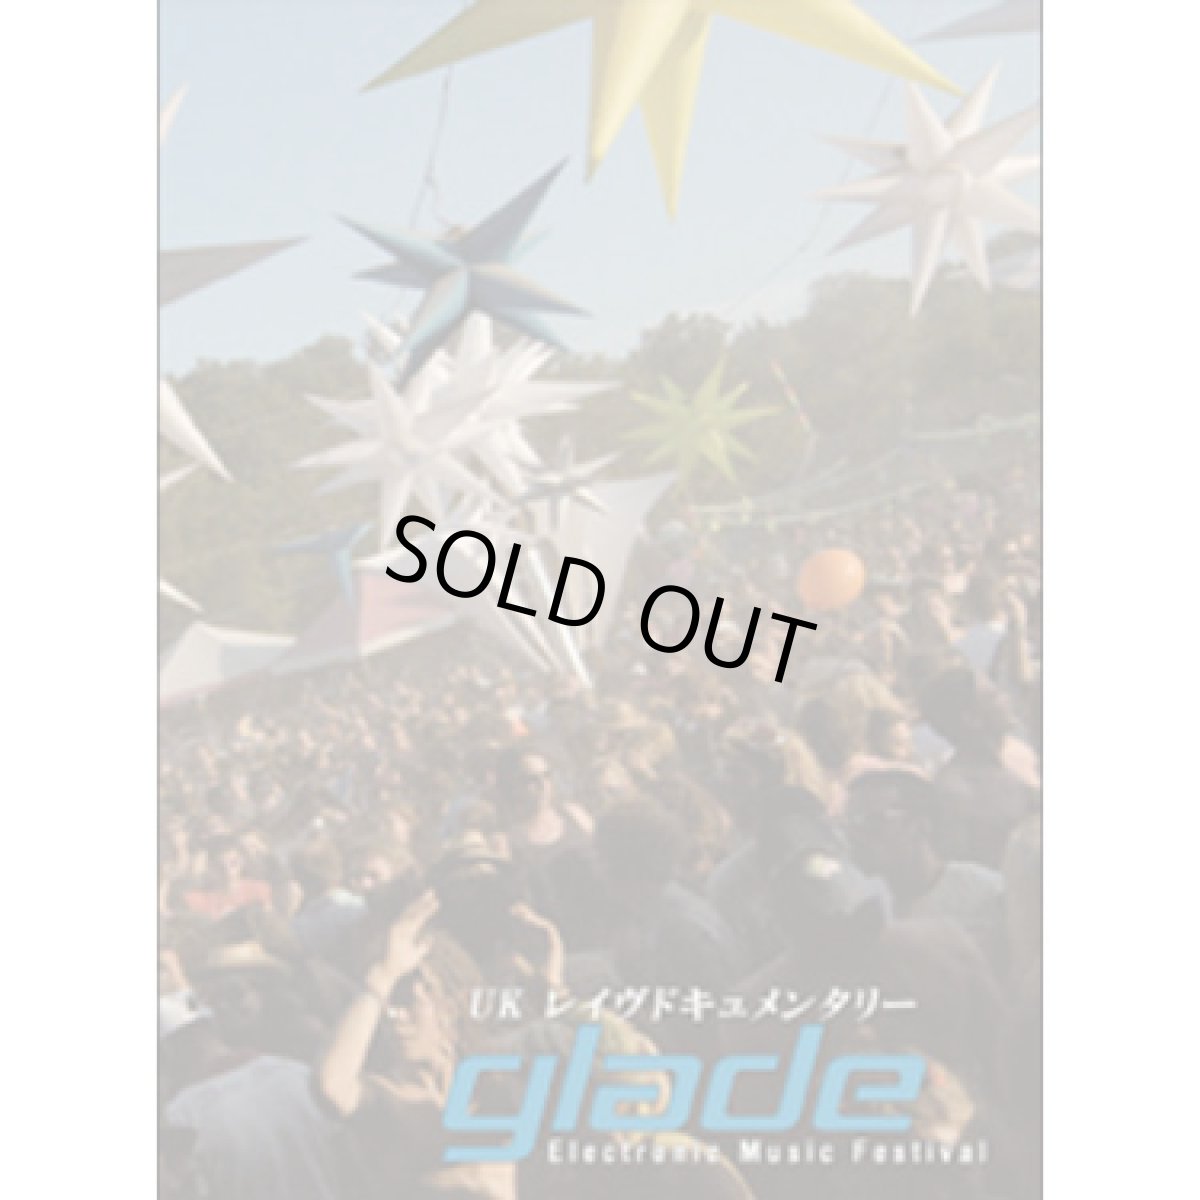 画像1: DVD「UKレイヴドキュメンタリー/Glade Electronic Music Festival 」 (1)